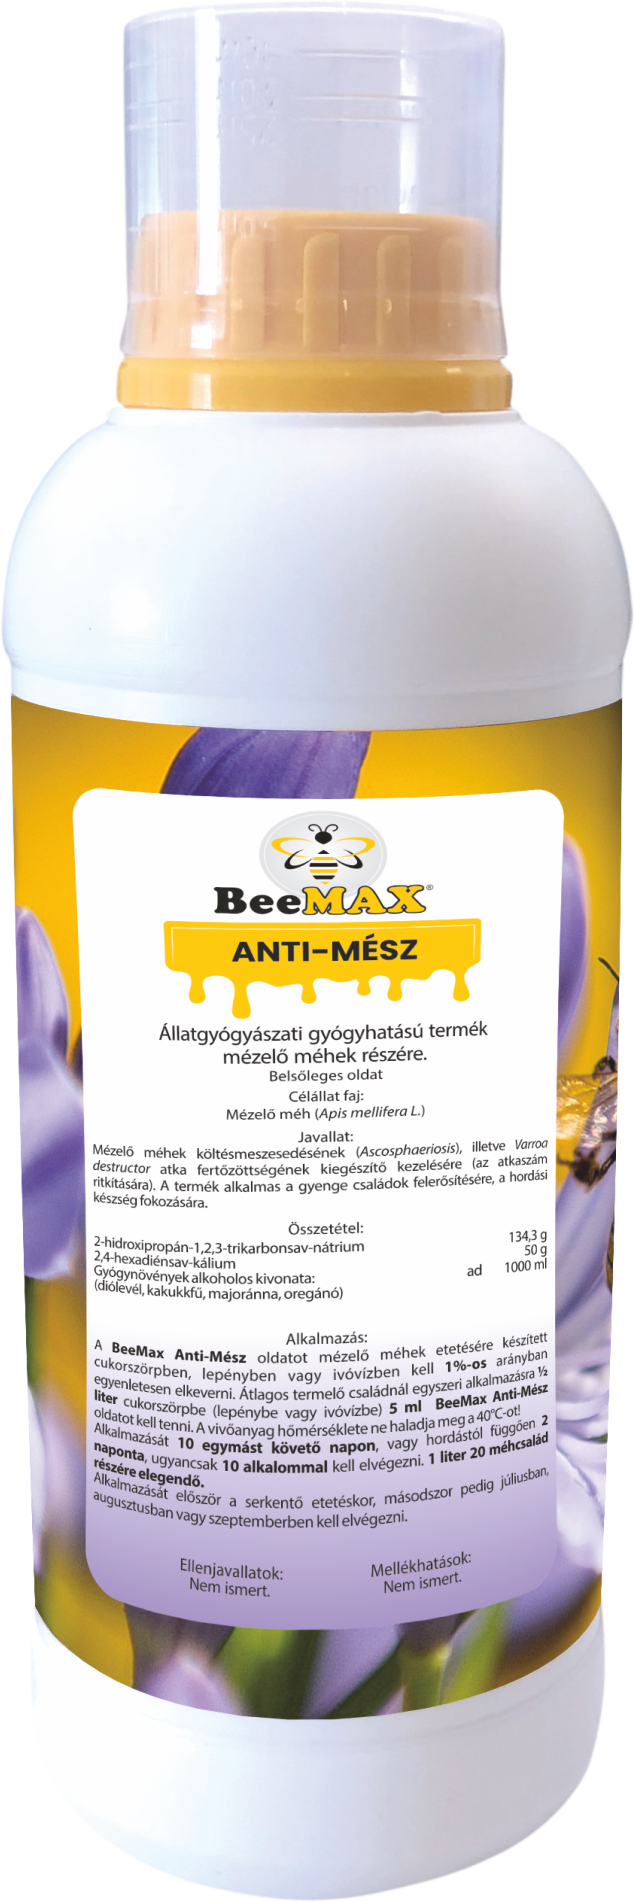 BeeMax Anti-Mész